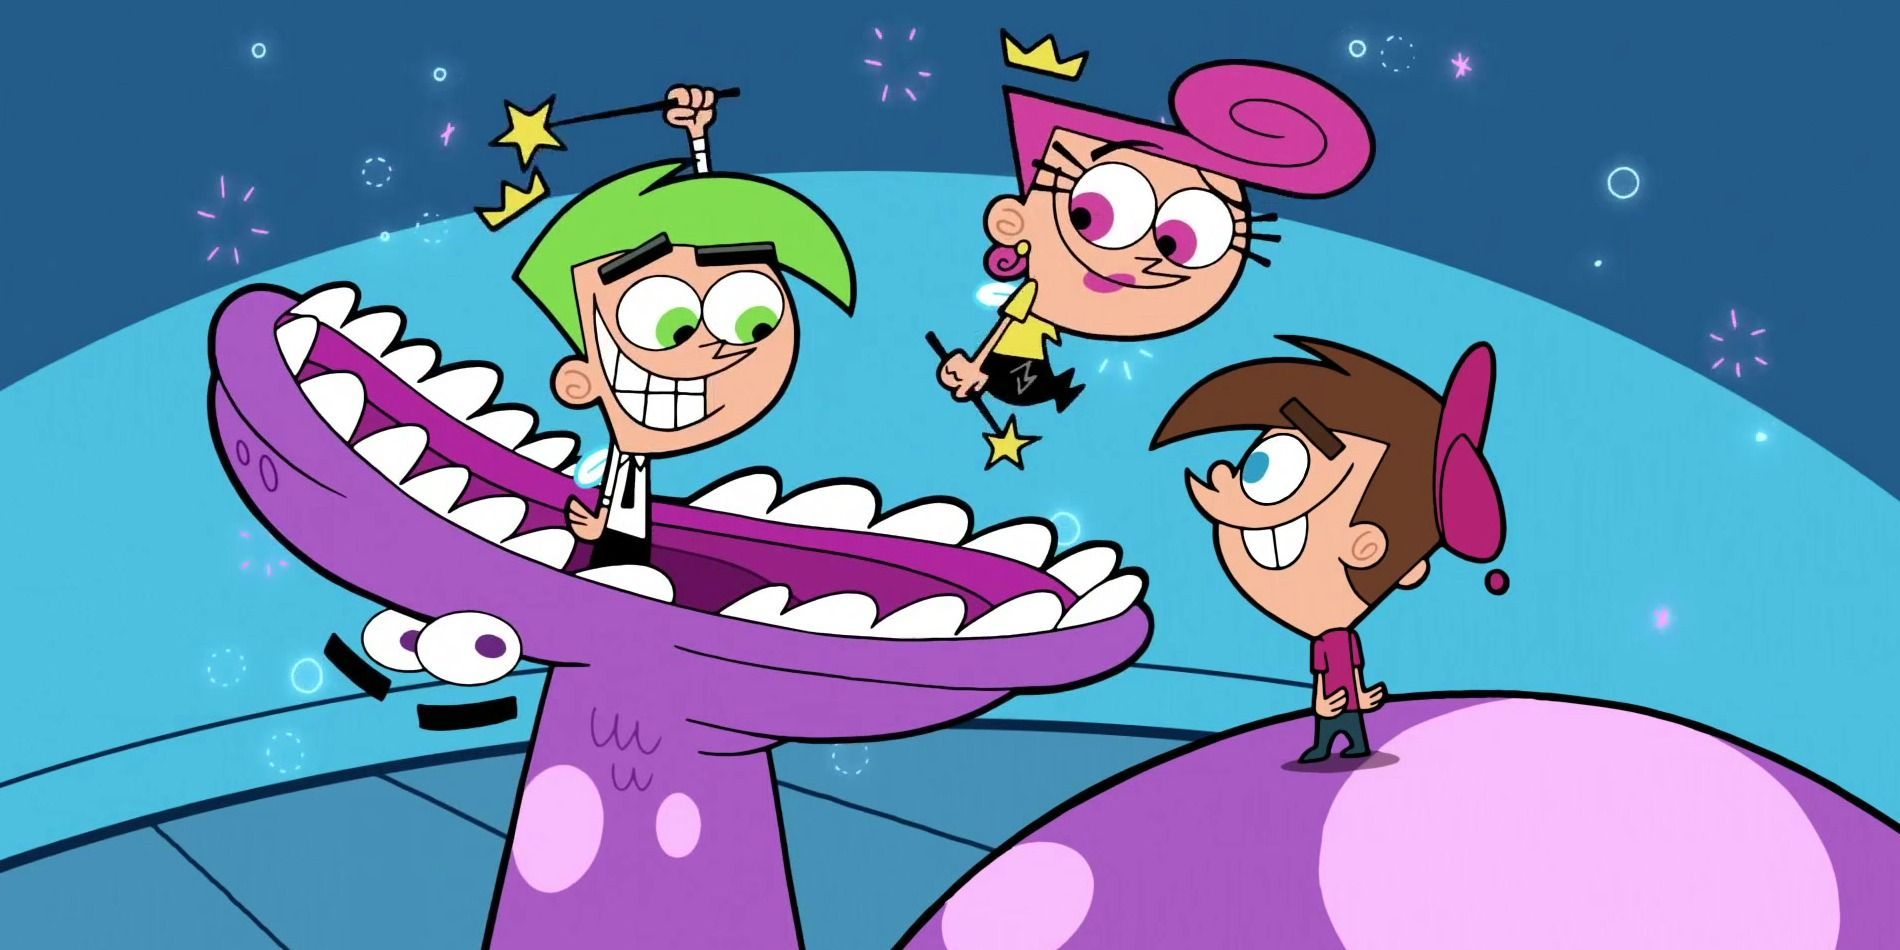 Reinicio de Fairly OddParents confirmado en Nickelodeon, 2 estrellas originales regresan